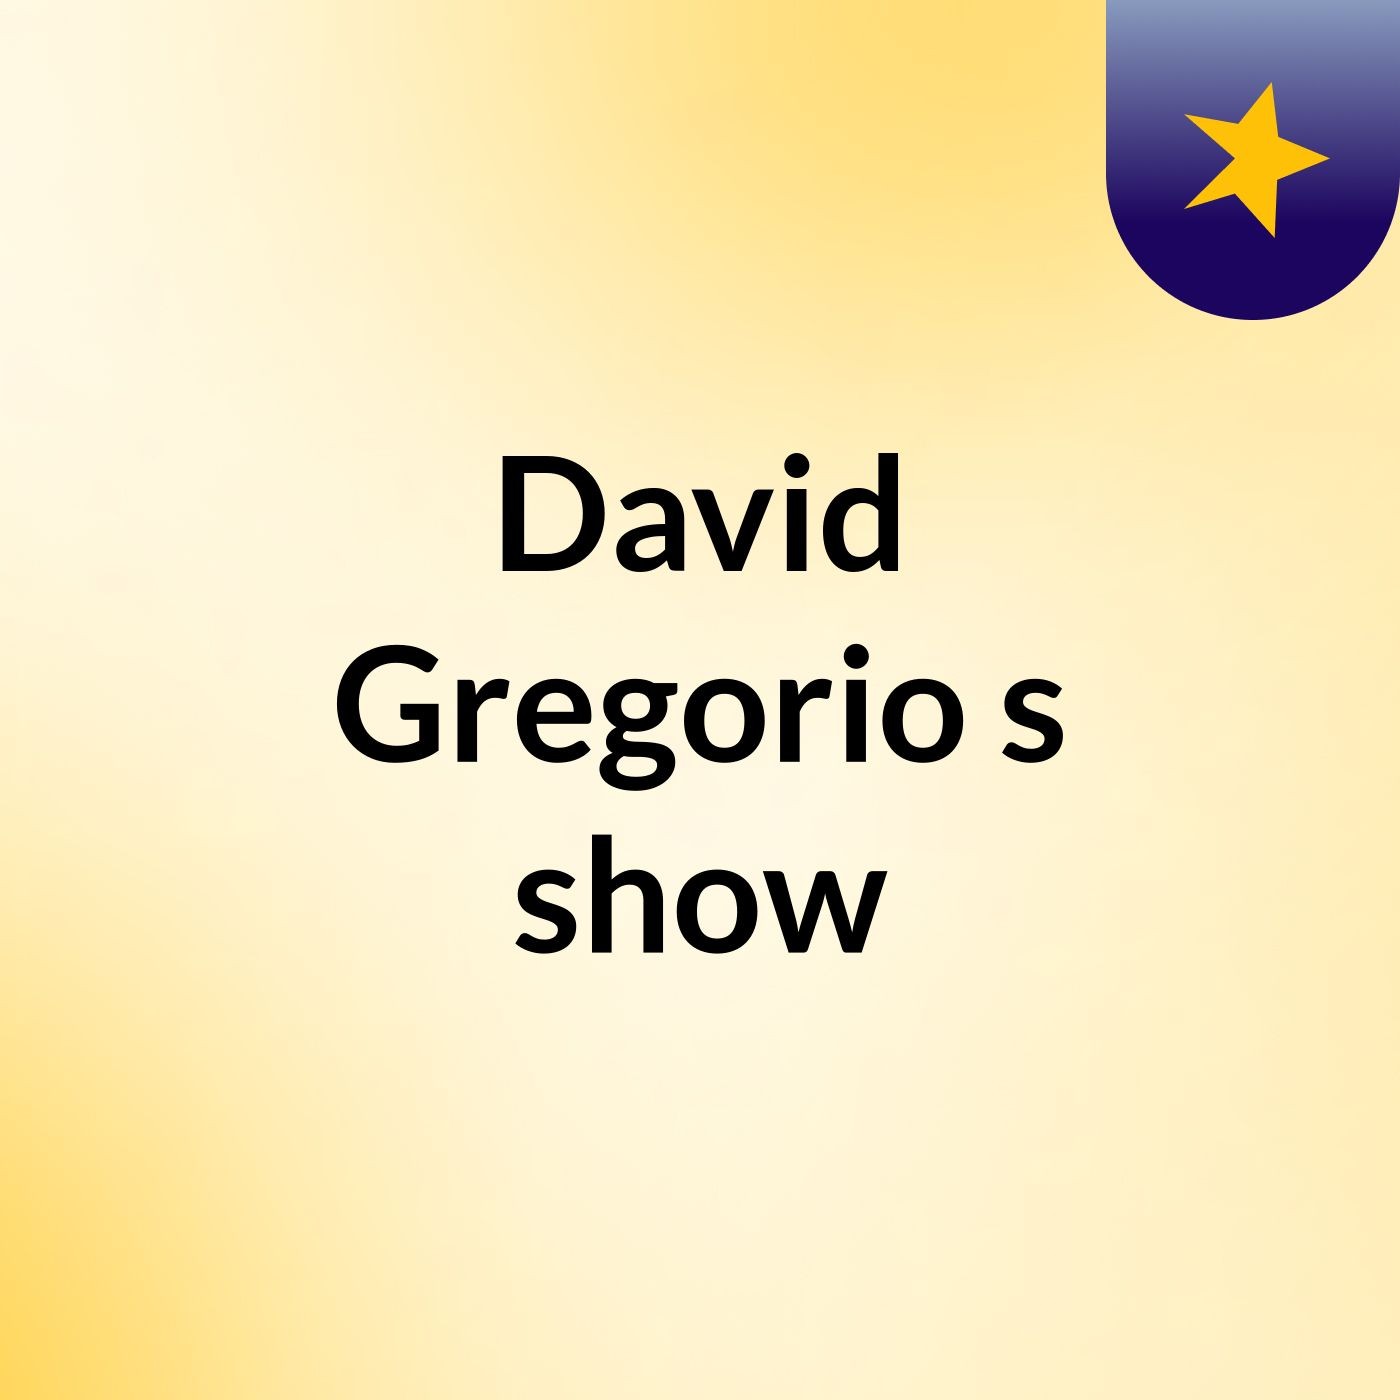 David Gregorio's show